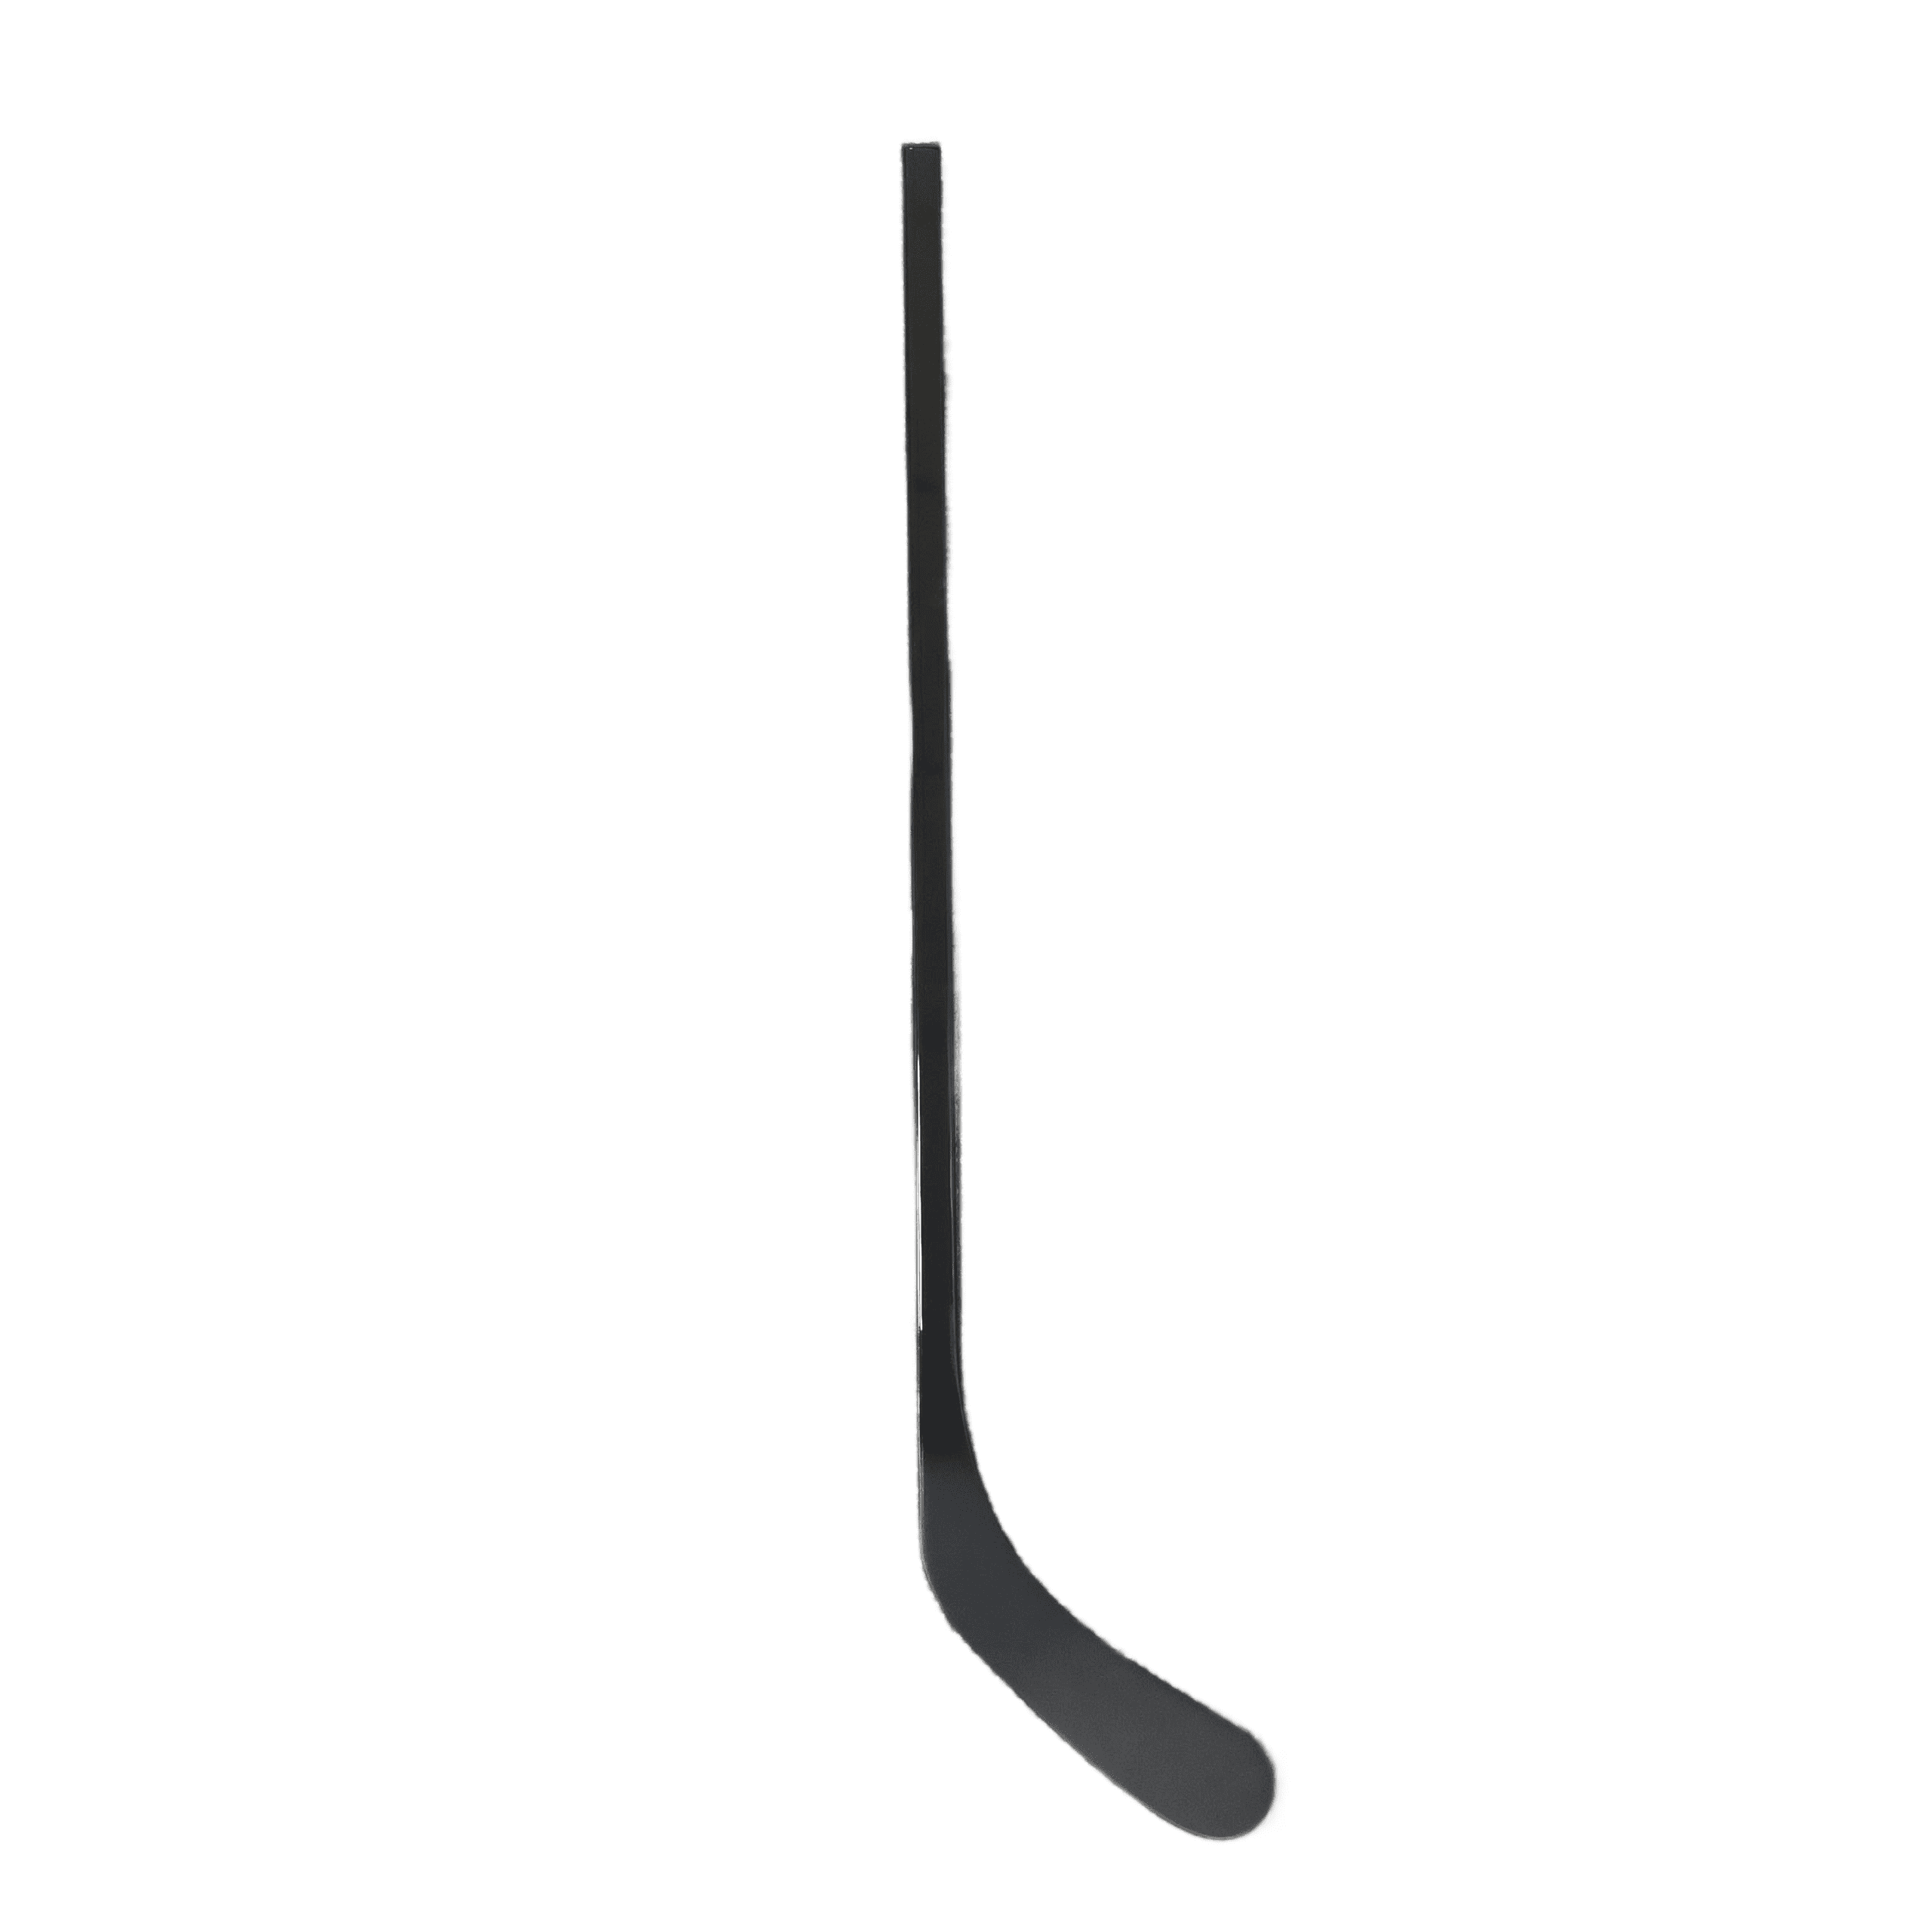 Pro-level hockey sticks